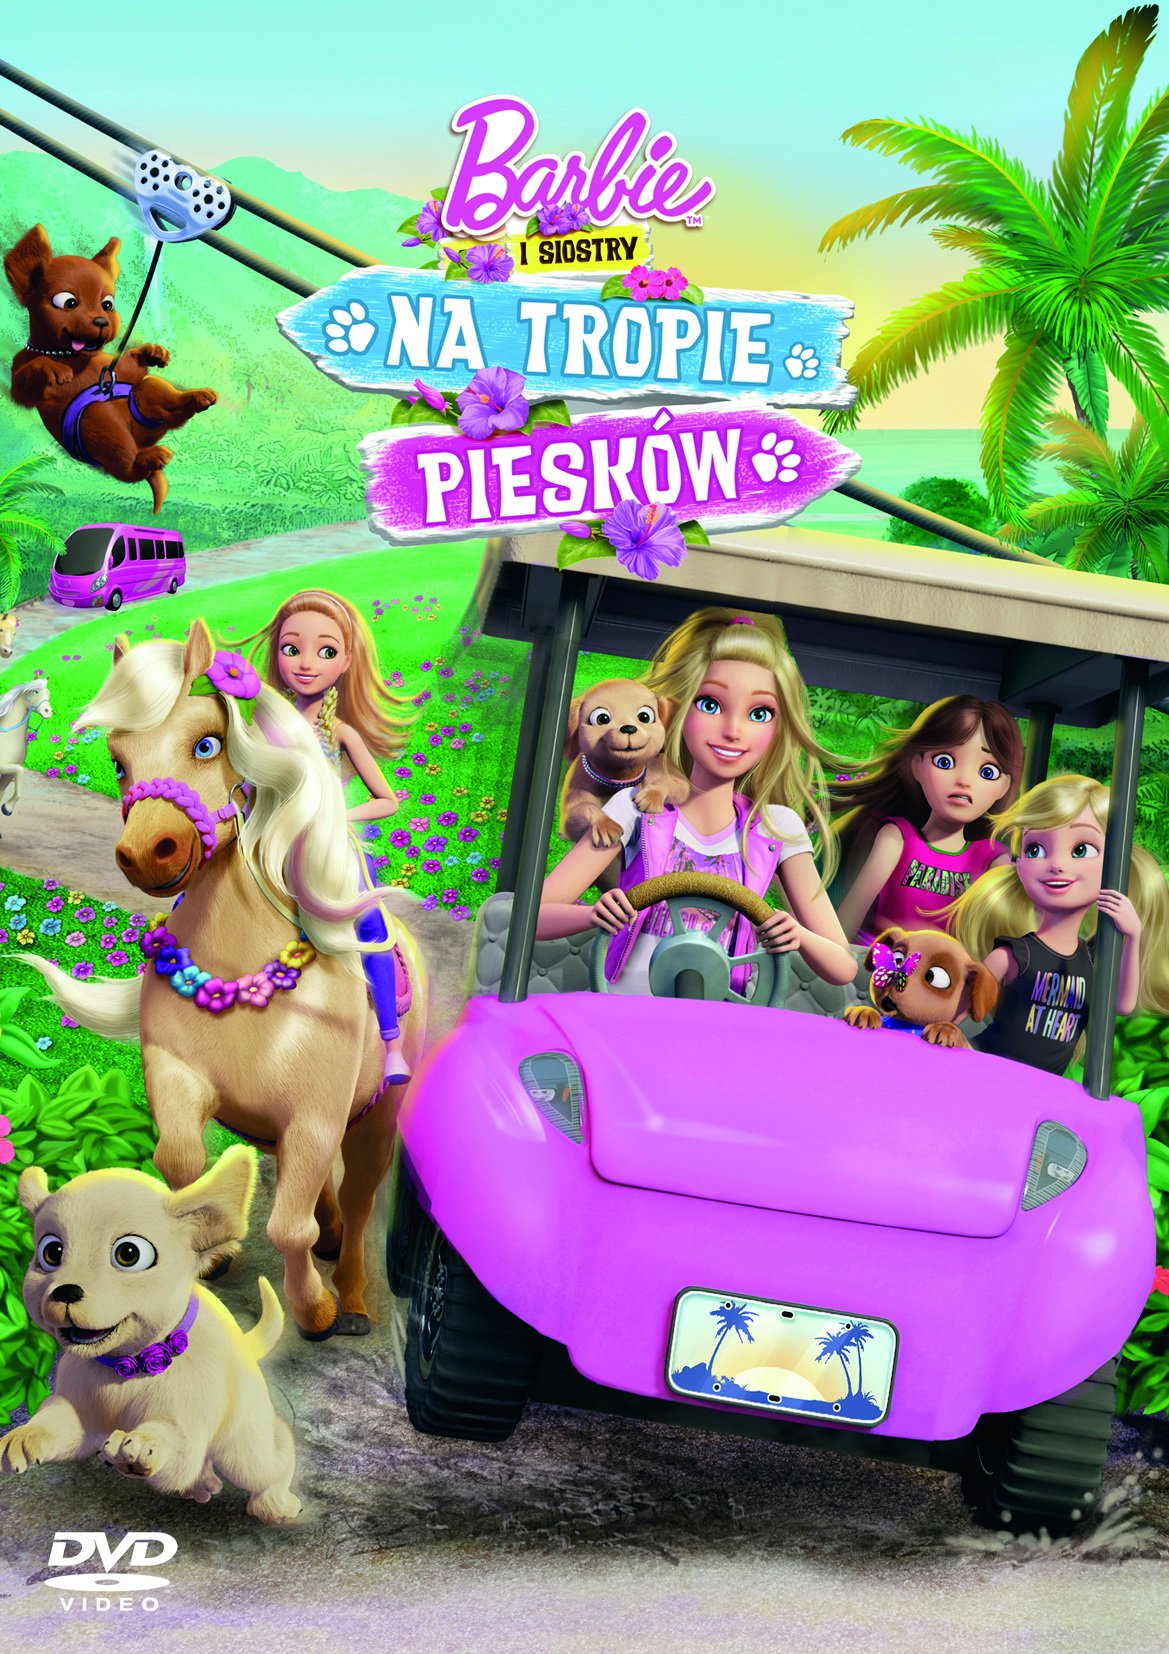 Barbie I Siostry Wielka Przygoda Z Pieskami Barbie i siostry na tropie piesków. Premiera DVD – Wydarzenia, imprezy